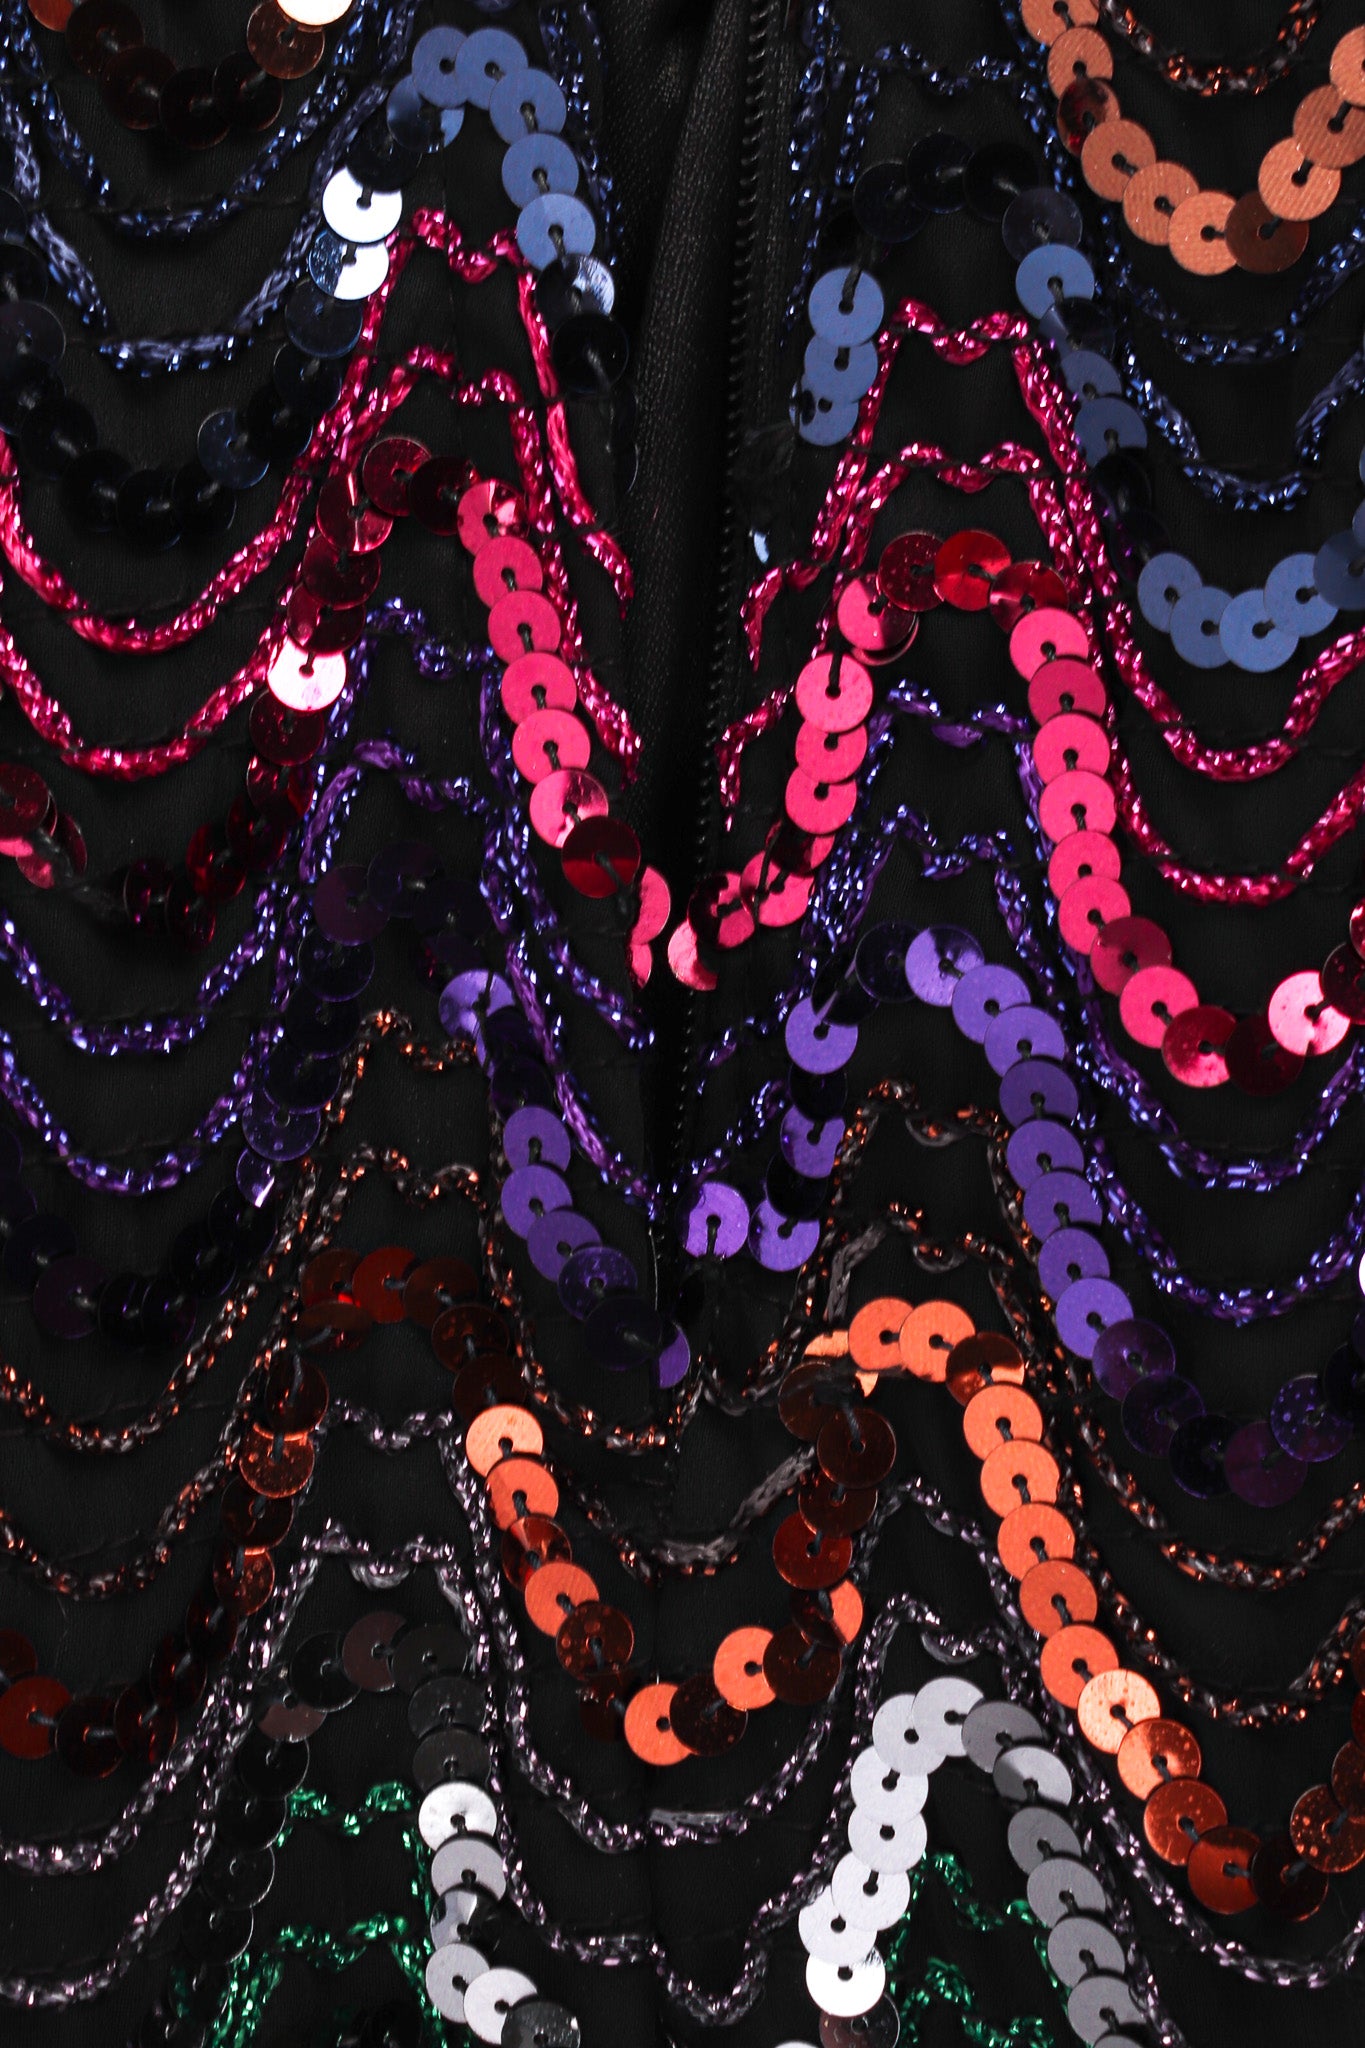 Vintage Mike Benet Dark Rainbow Sequin Column Dress back zipper opening @ Recess LA